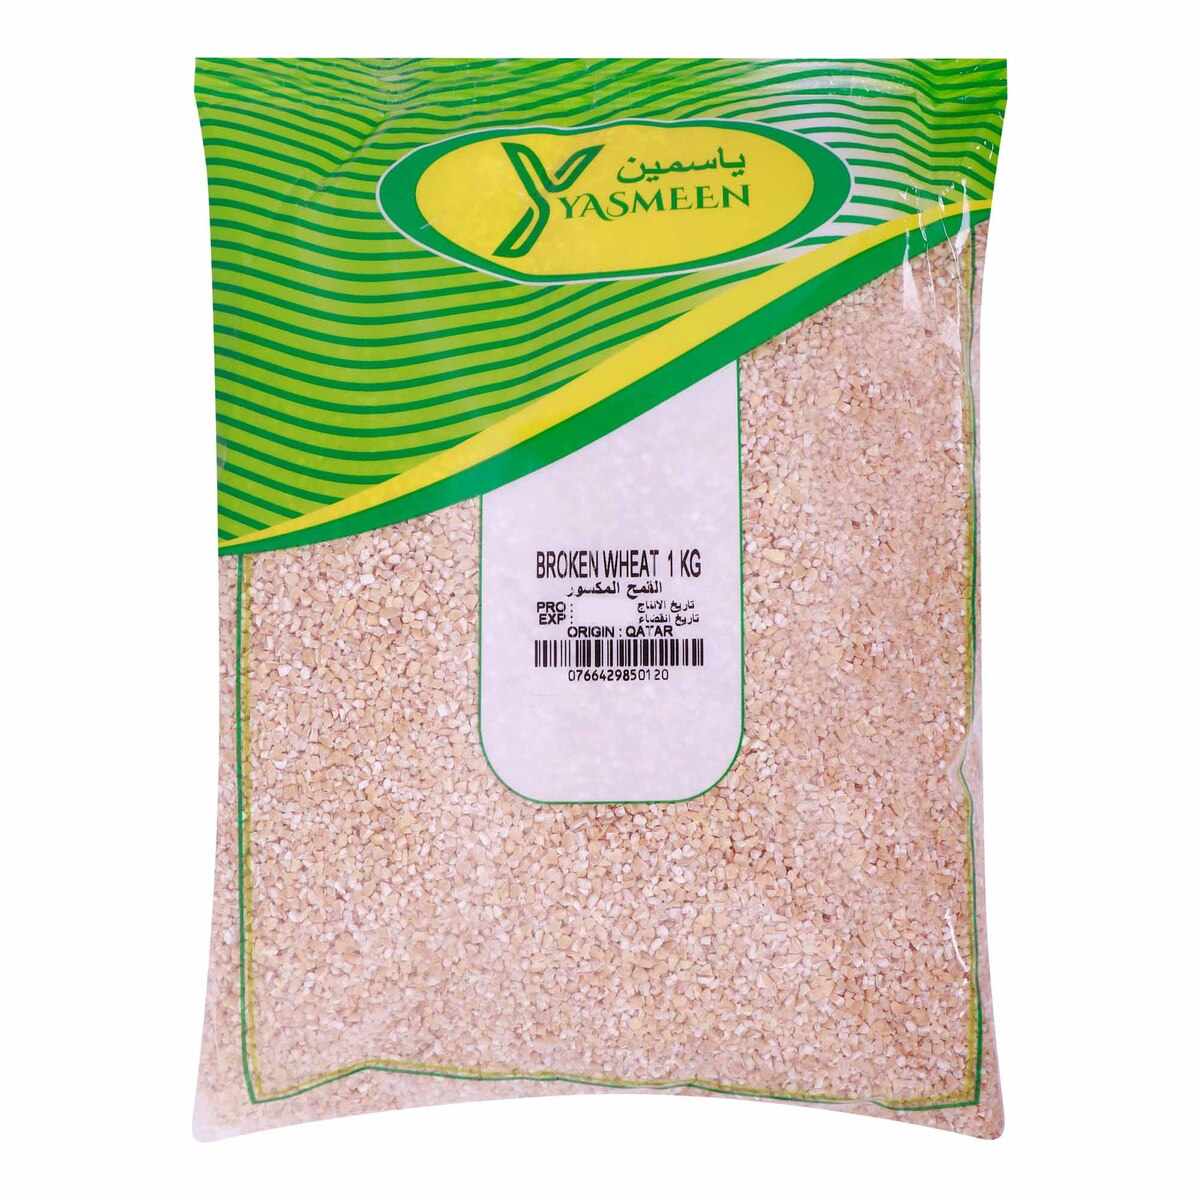 Yasmeen Broken Wheat, 1 kg